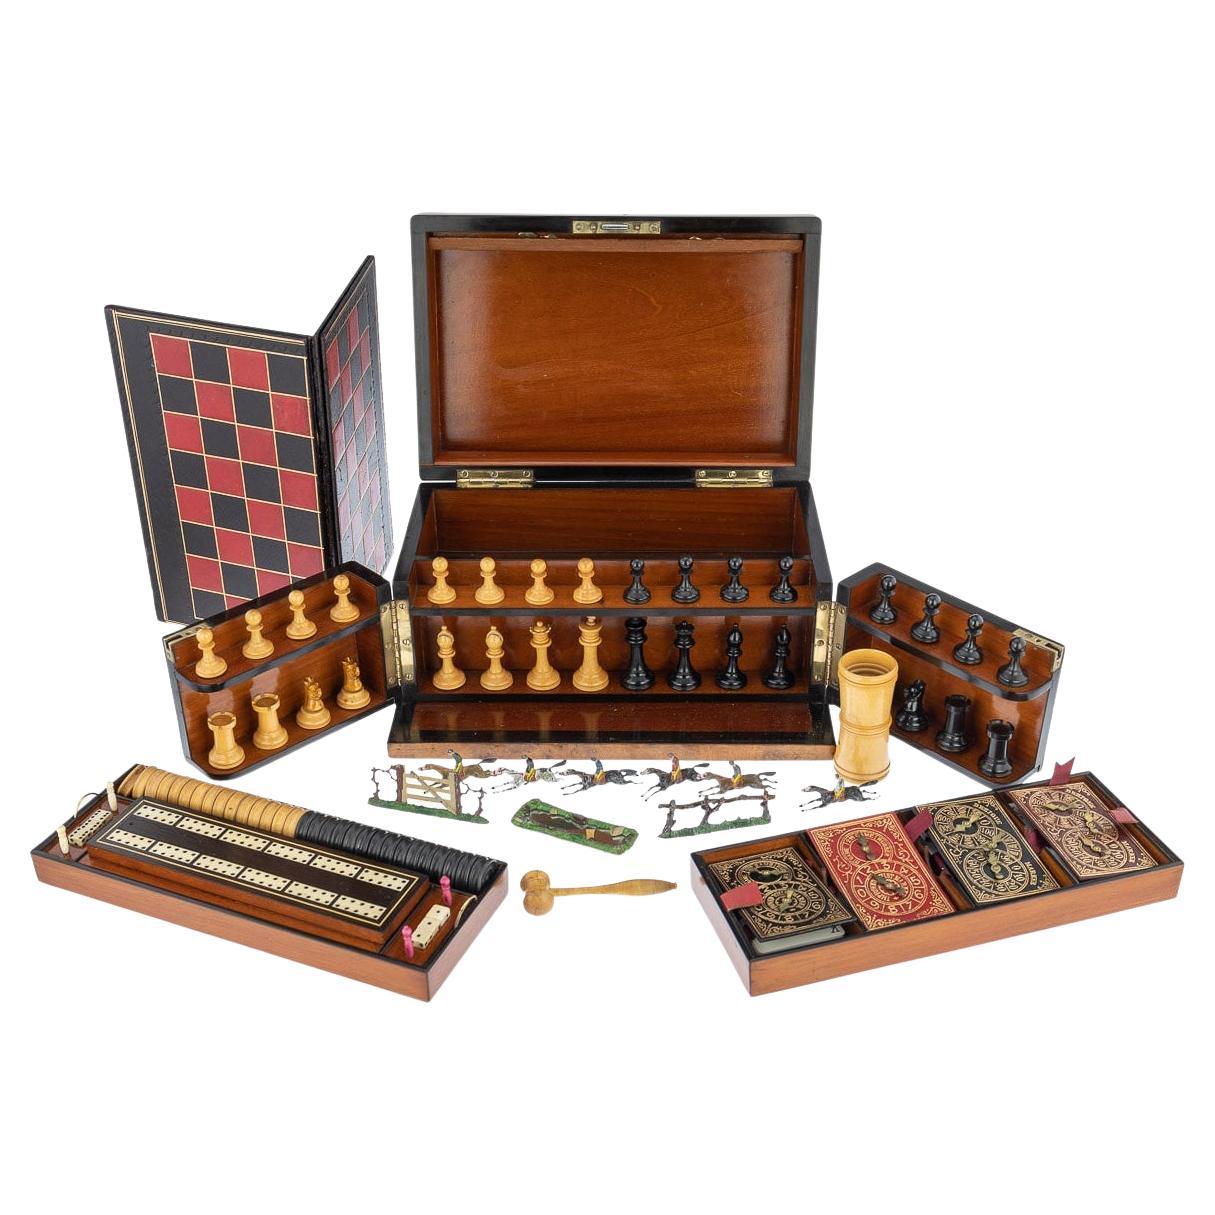 Compendio victoriano de juegos de nogal del siglo XIX, cartas y juegos de mesa, hacia 1890